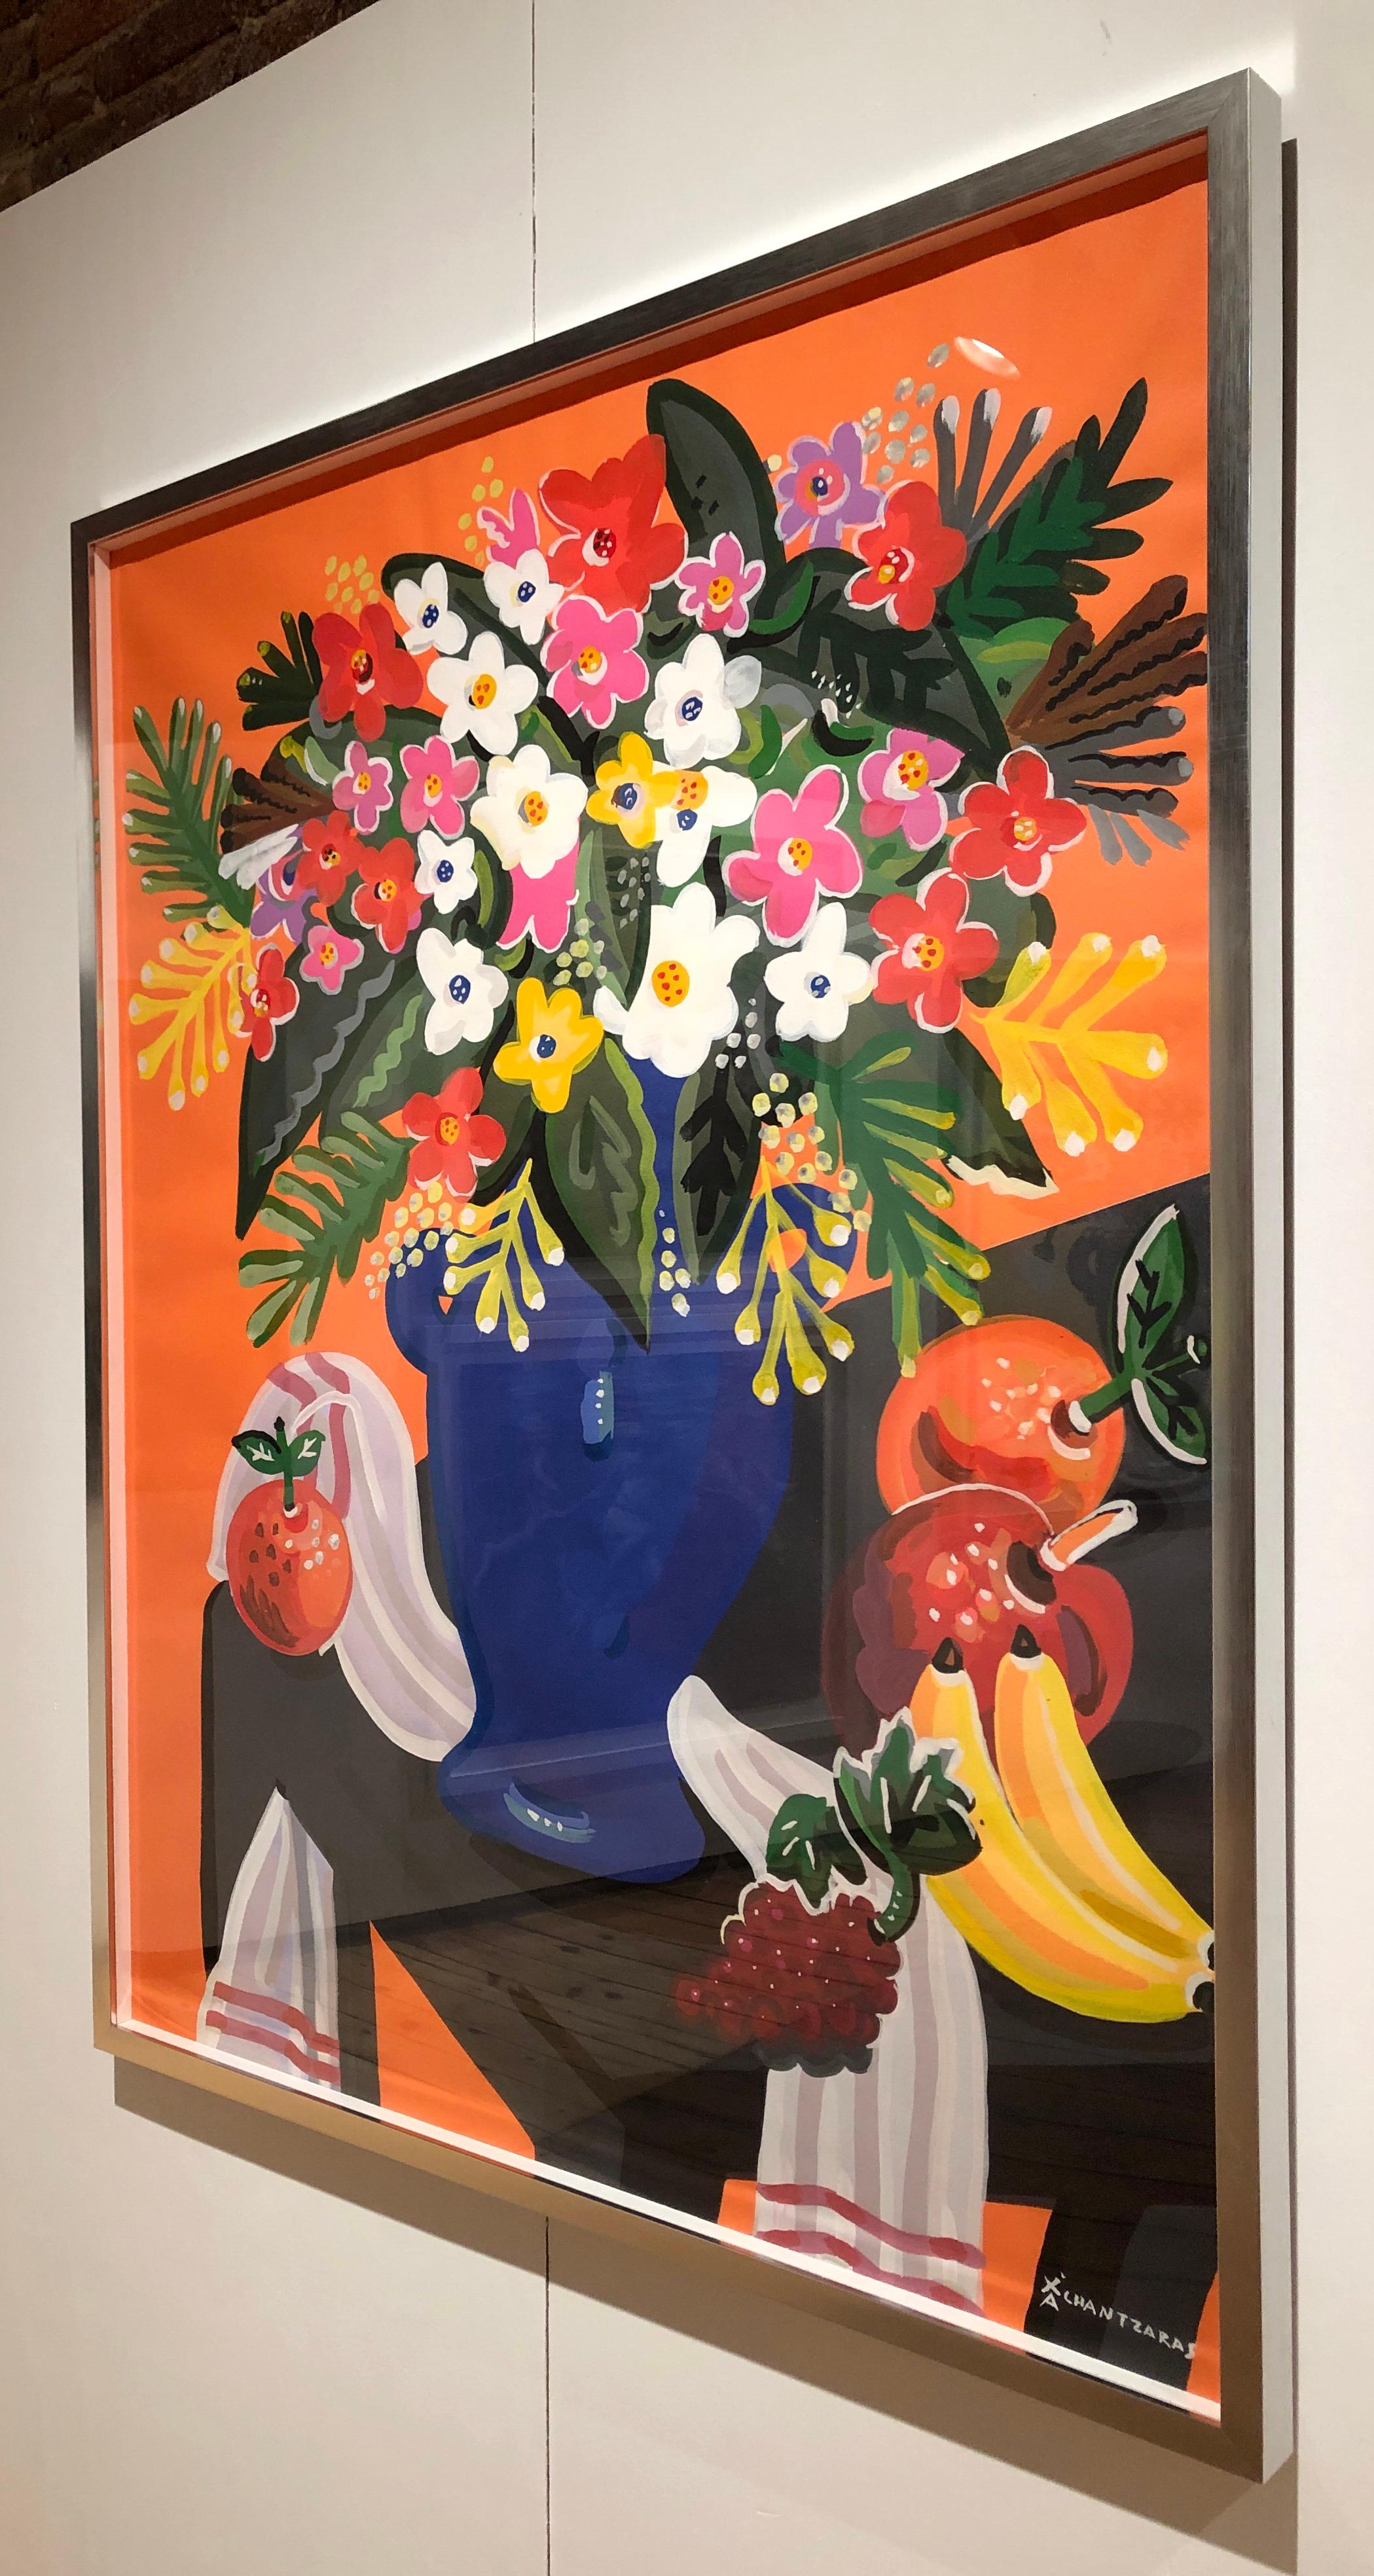 Bouquet, peinture de nature morte colorée Pop art en forme de fleur, fond orange - Contemporain Painting par Apostolos Chantzaras